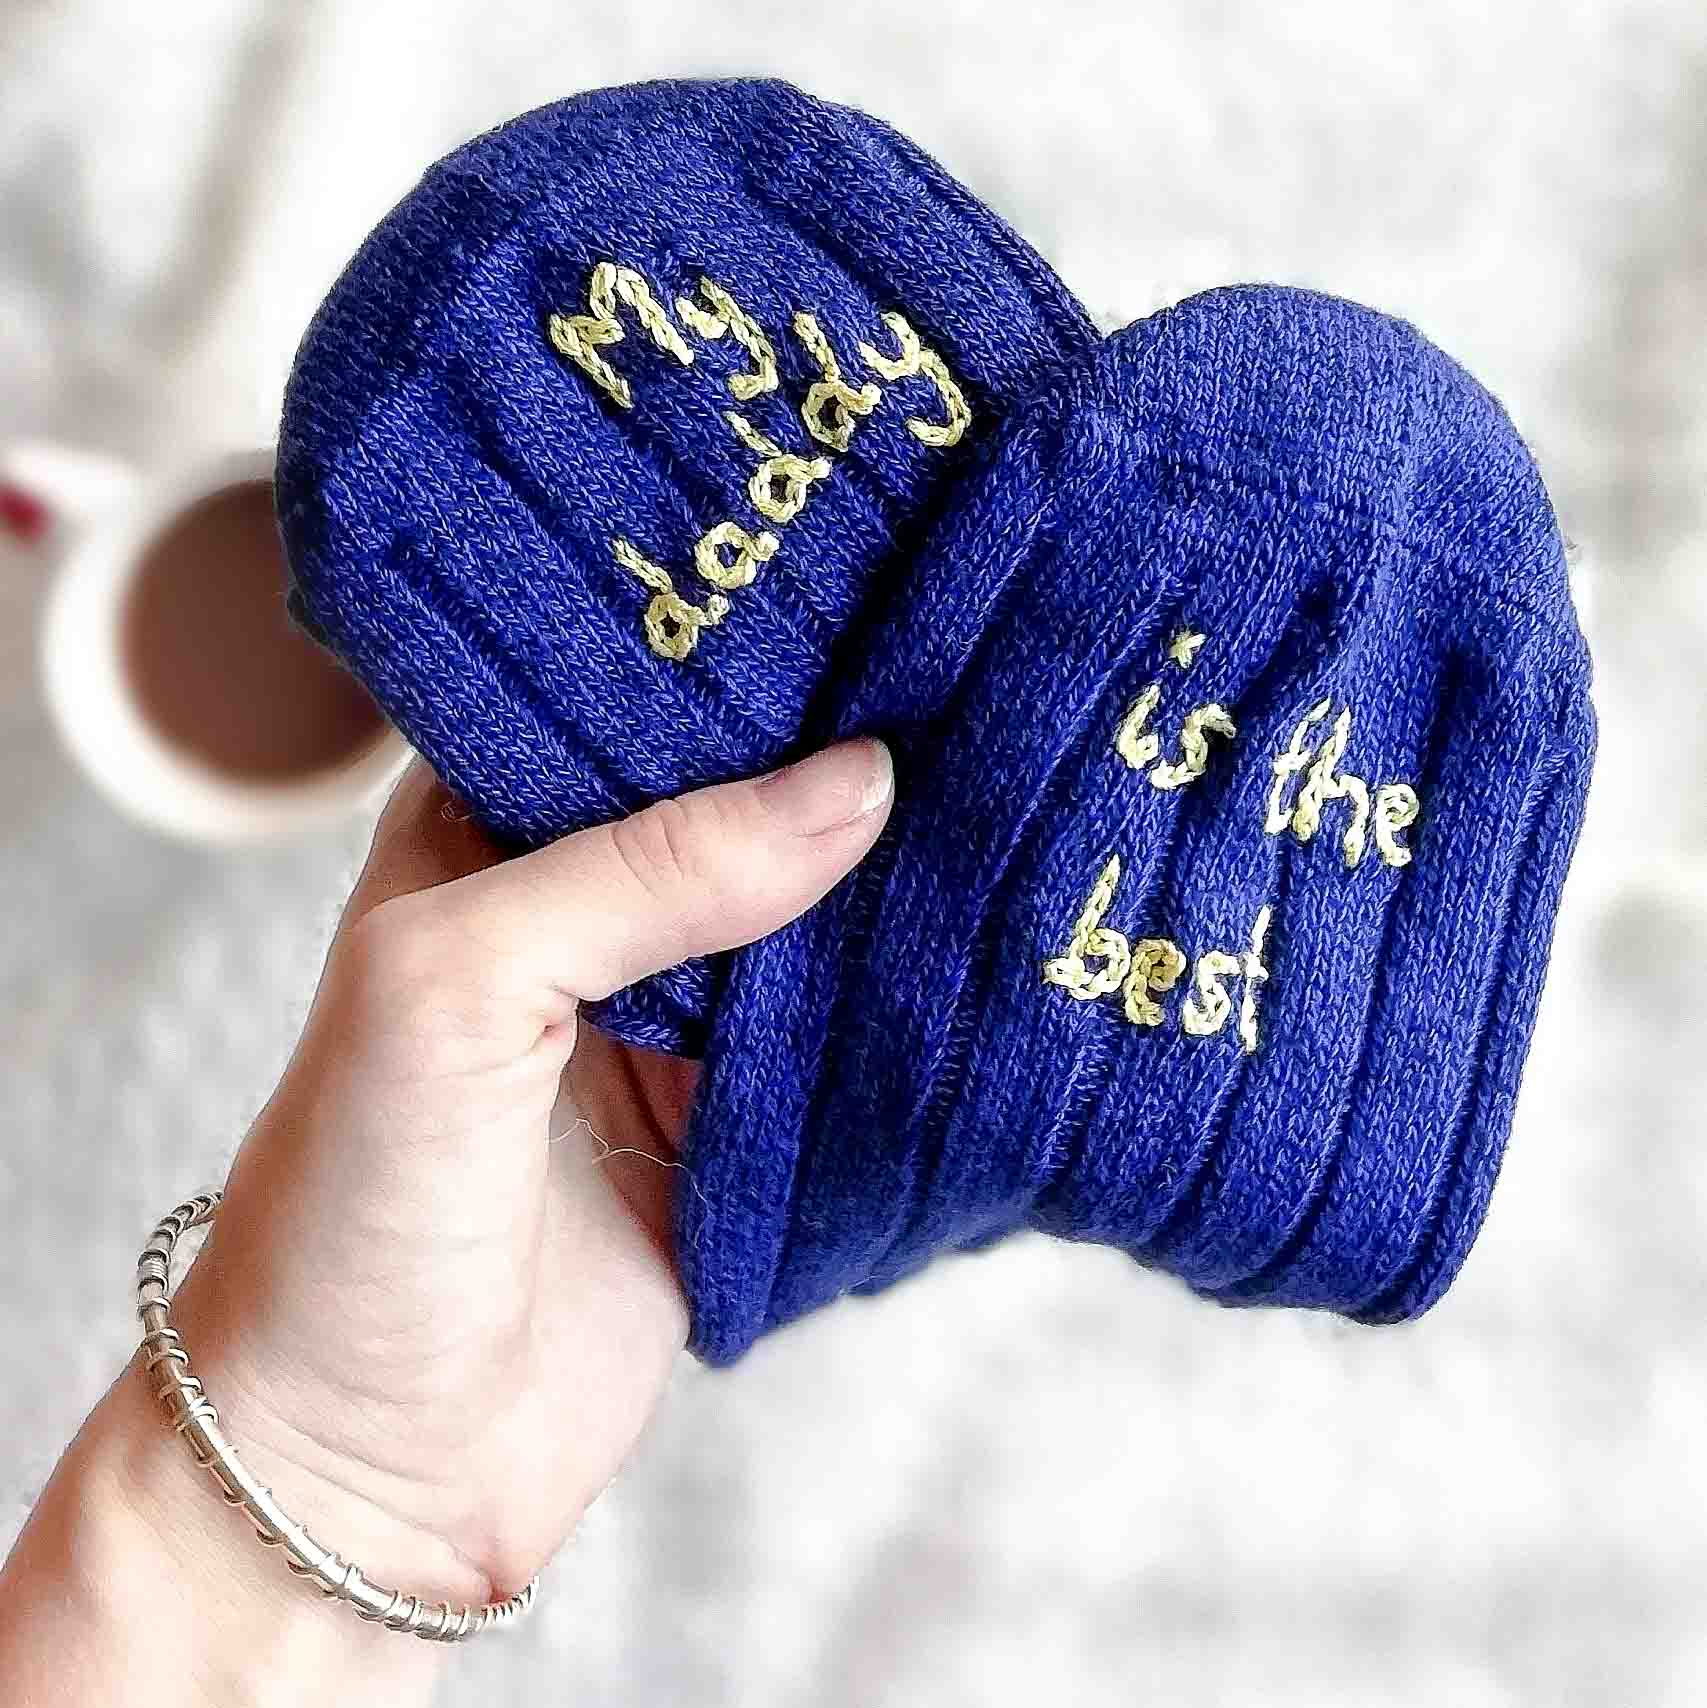 Men's personalised bed socks by StephieAnn